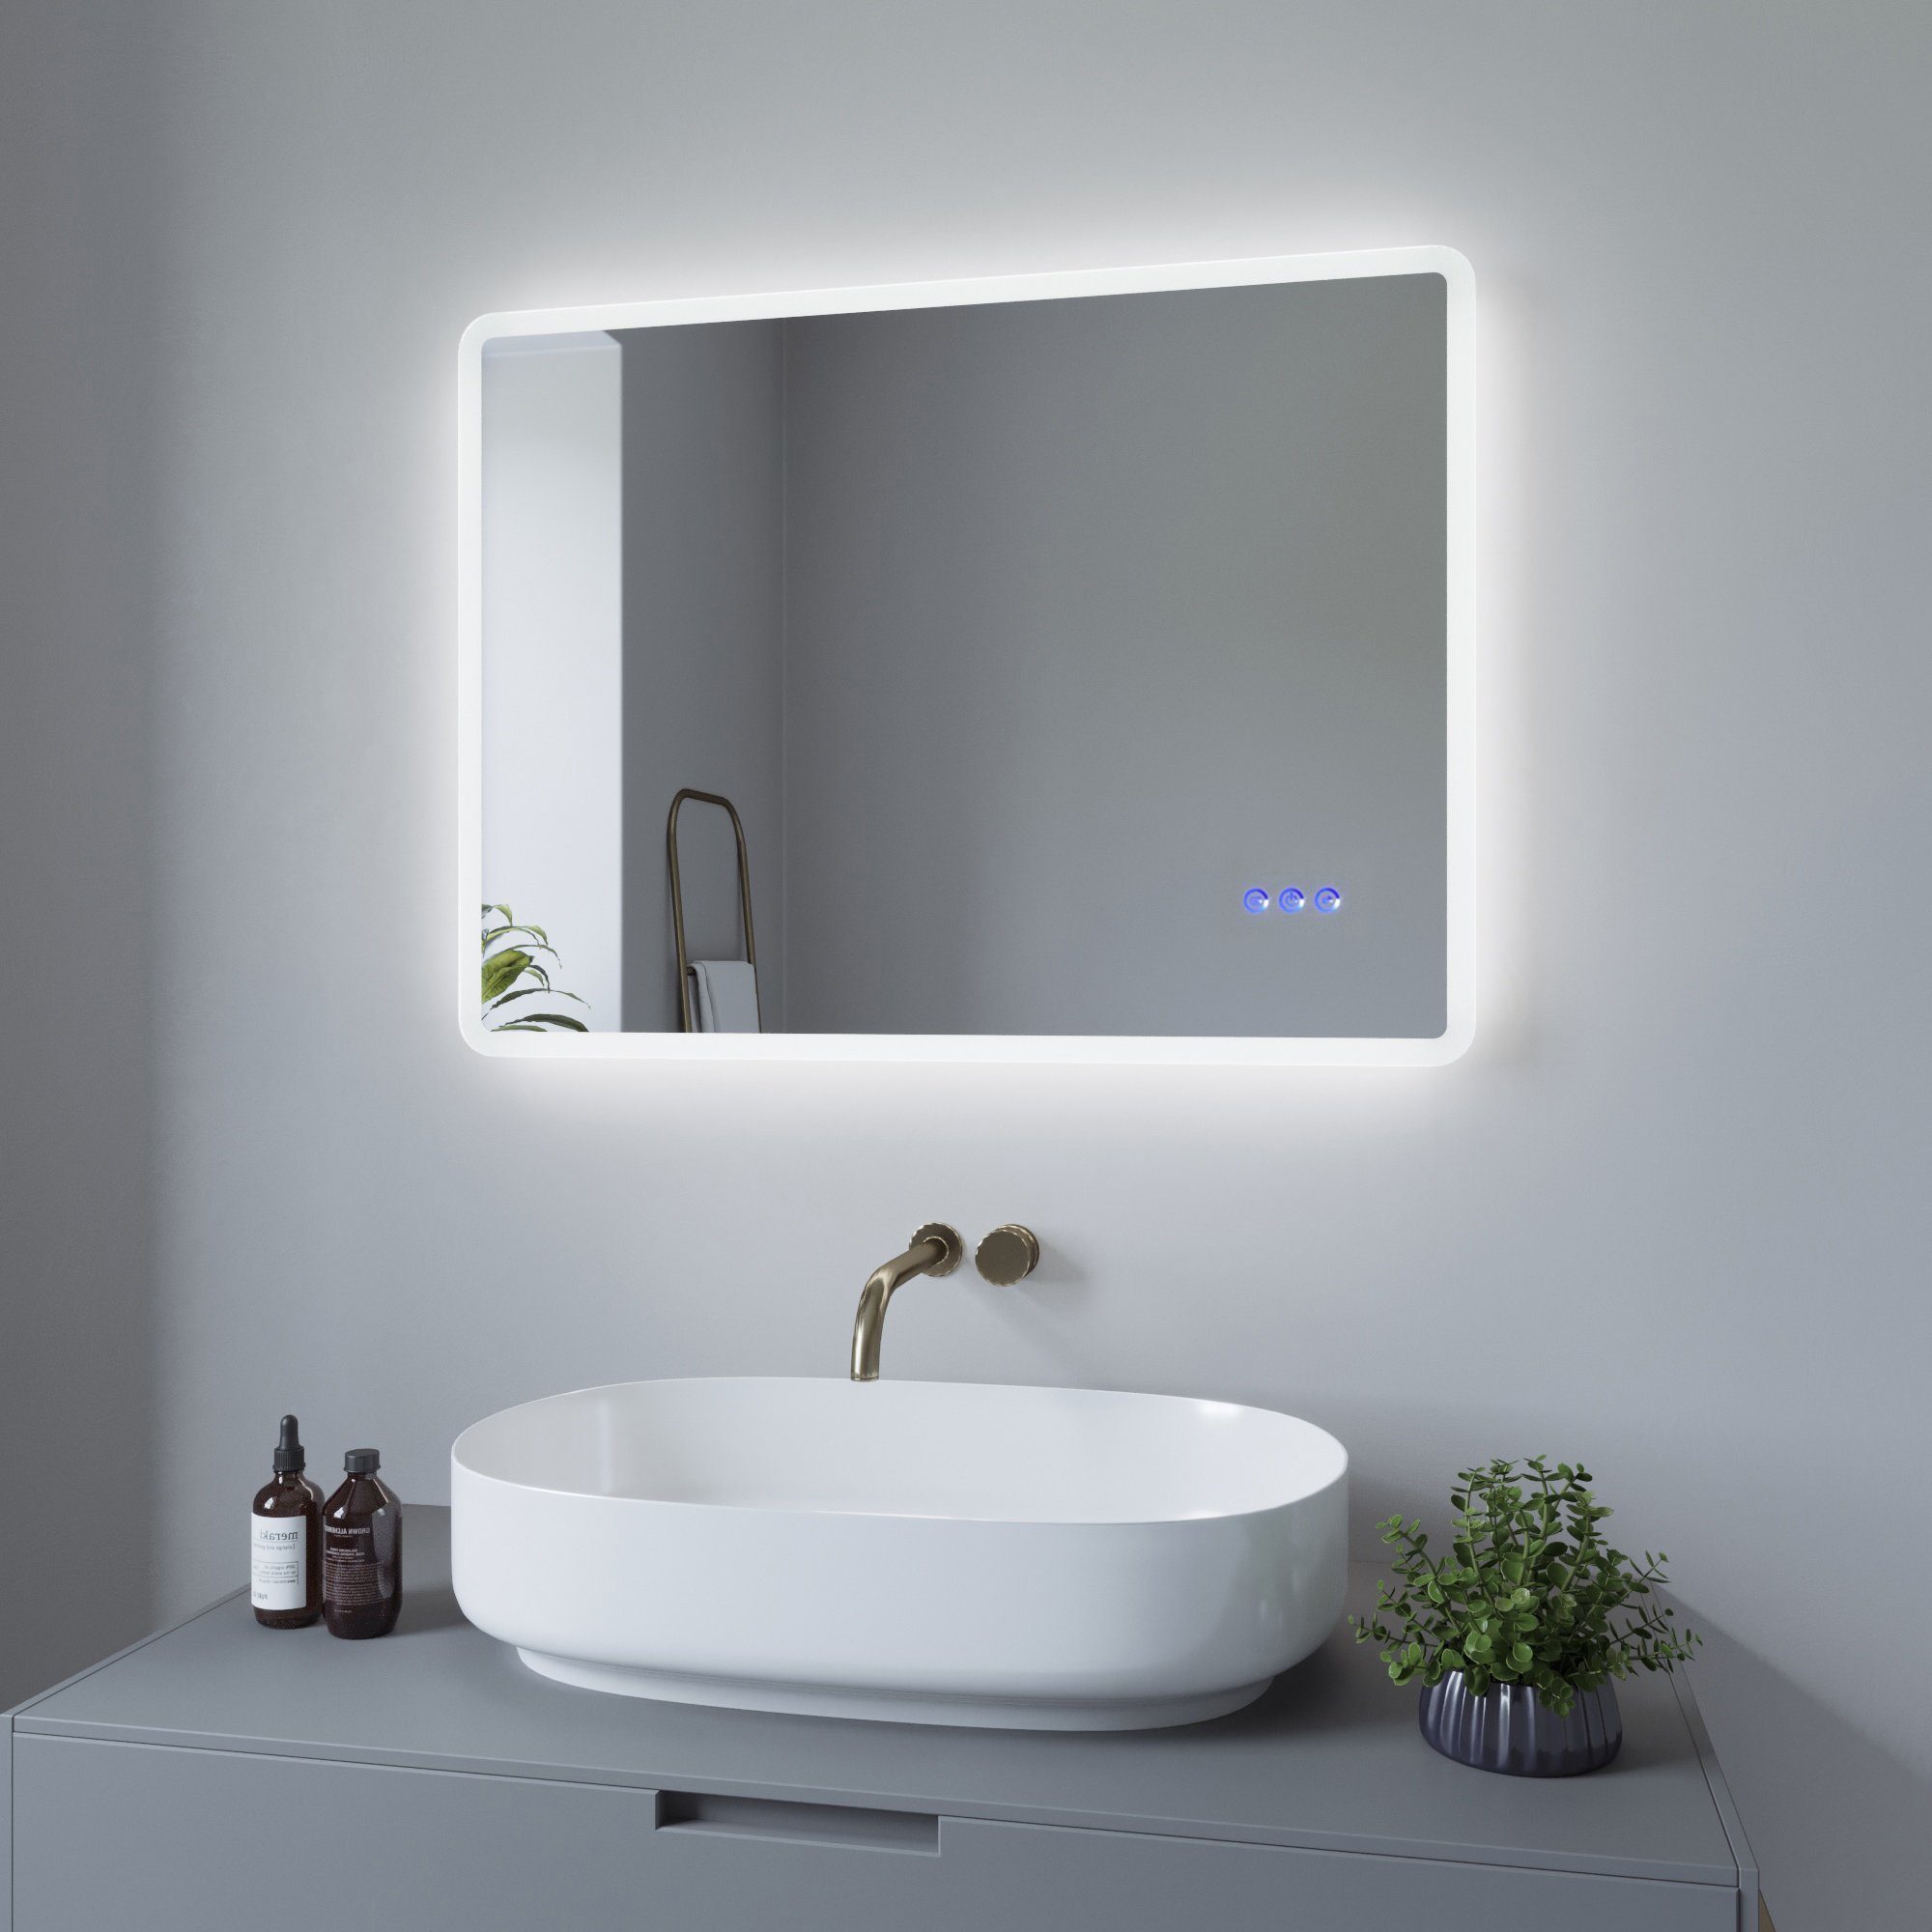 Badspiegel 6400K Warmweiß vertikal Beleuchtung, Badspiegel LED AQUALAVOS Kaltweiß 3000K, Touch-Schalter & und horizontal 80x60cm mit Energiesparend mit Spiegel